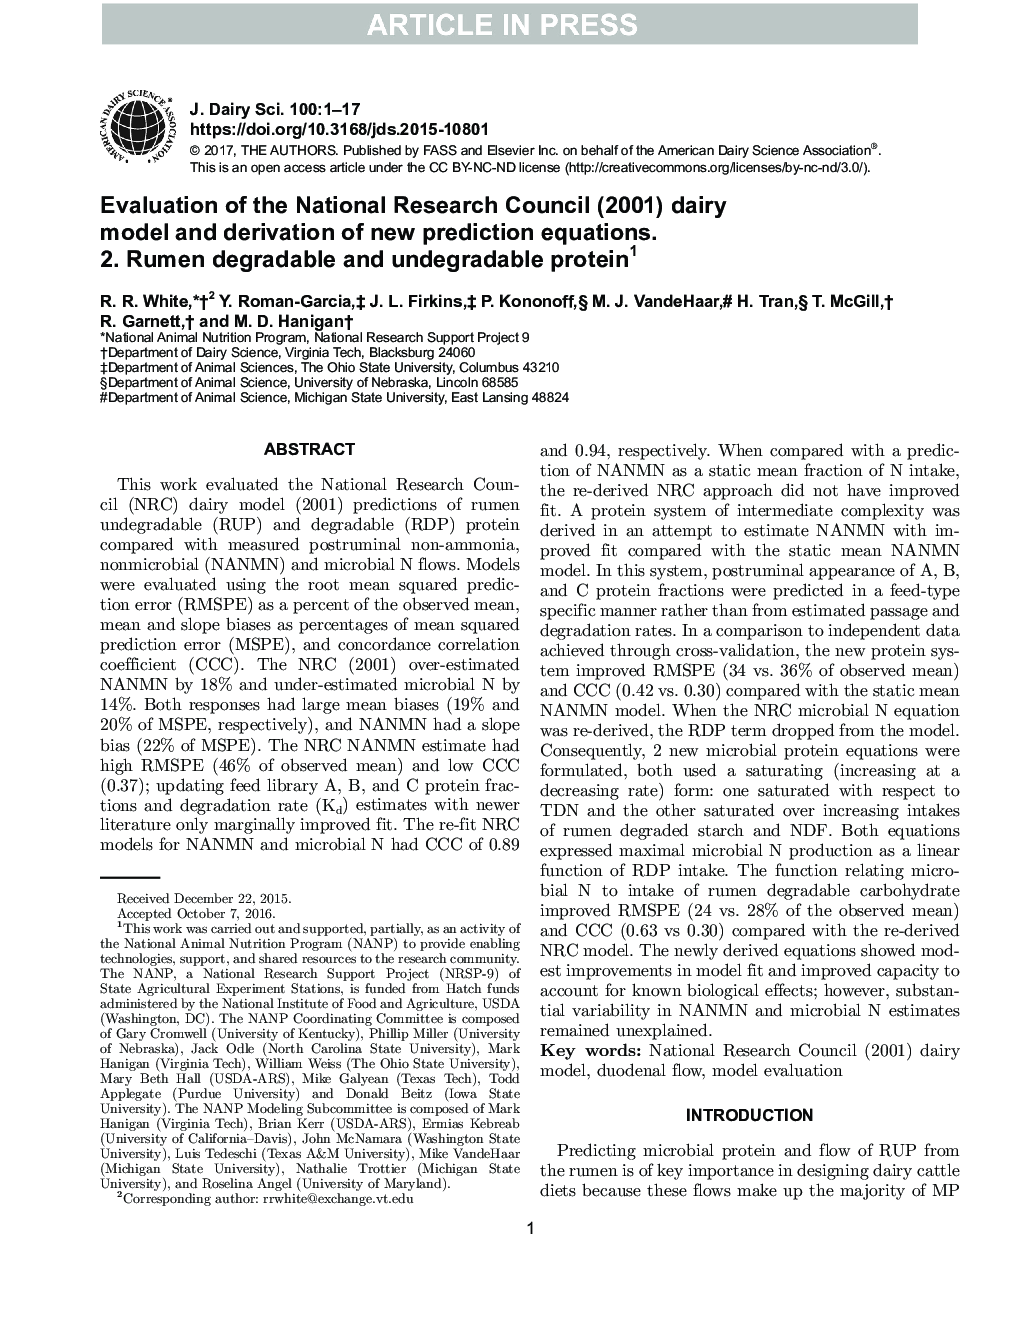 ارزیابی شورای پژوهشی ملی (2001) مدل لبنیات و مشتق معادلات پیش بینی جدید. 2. پروتئین قابل تجزیه و غیر قابل تجزیه 